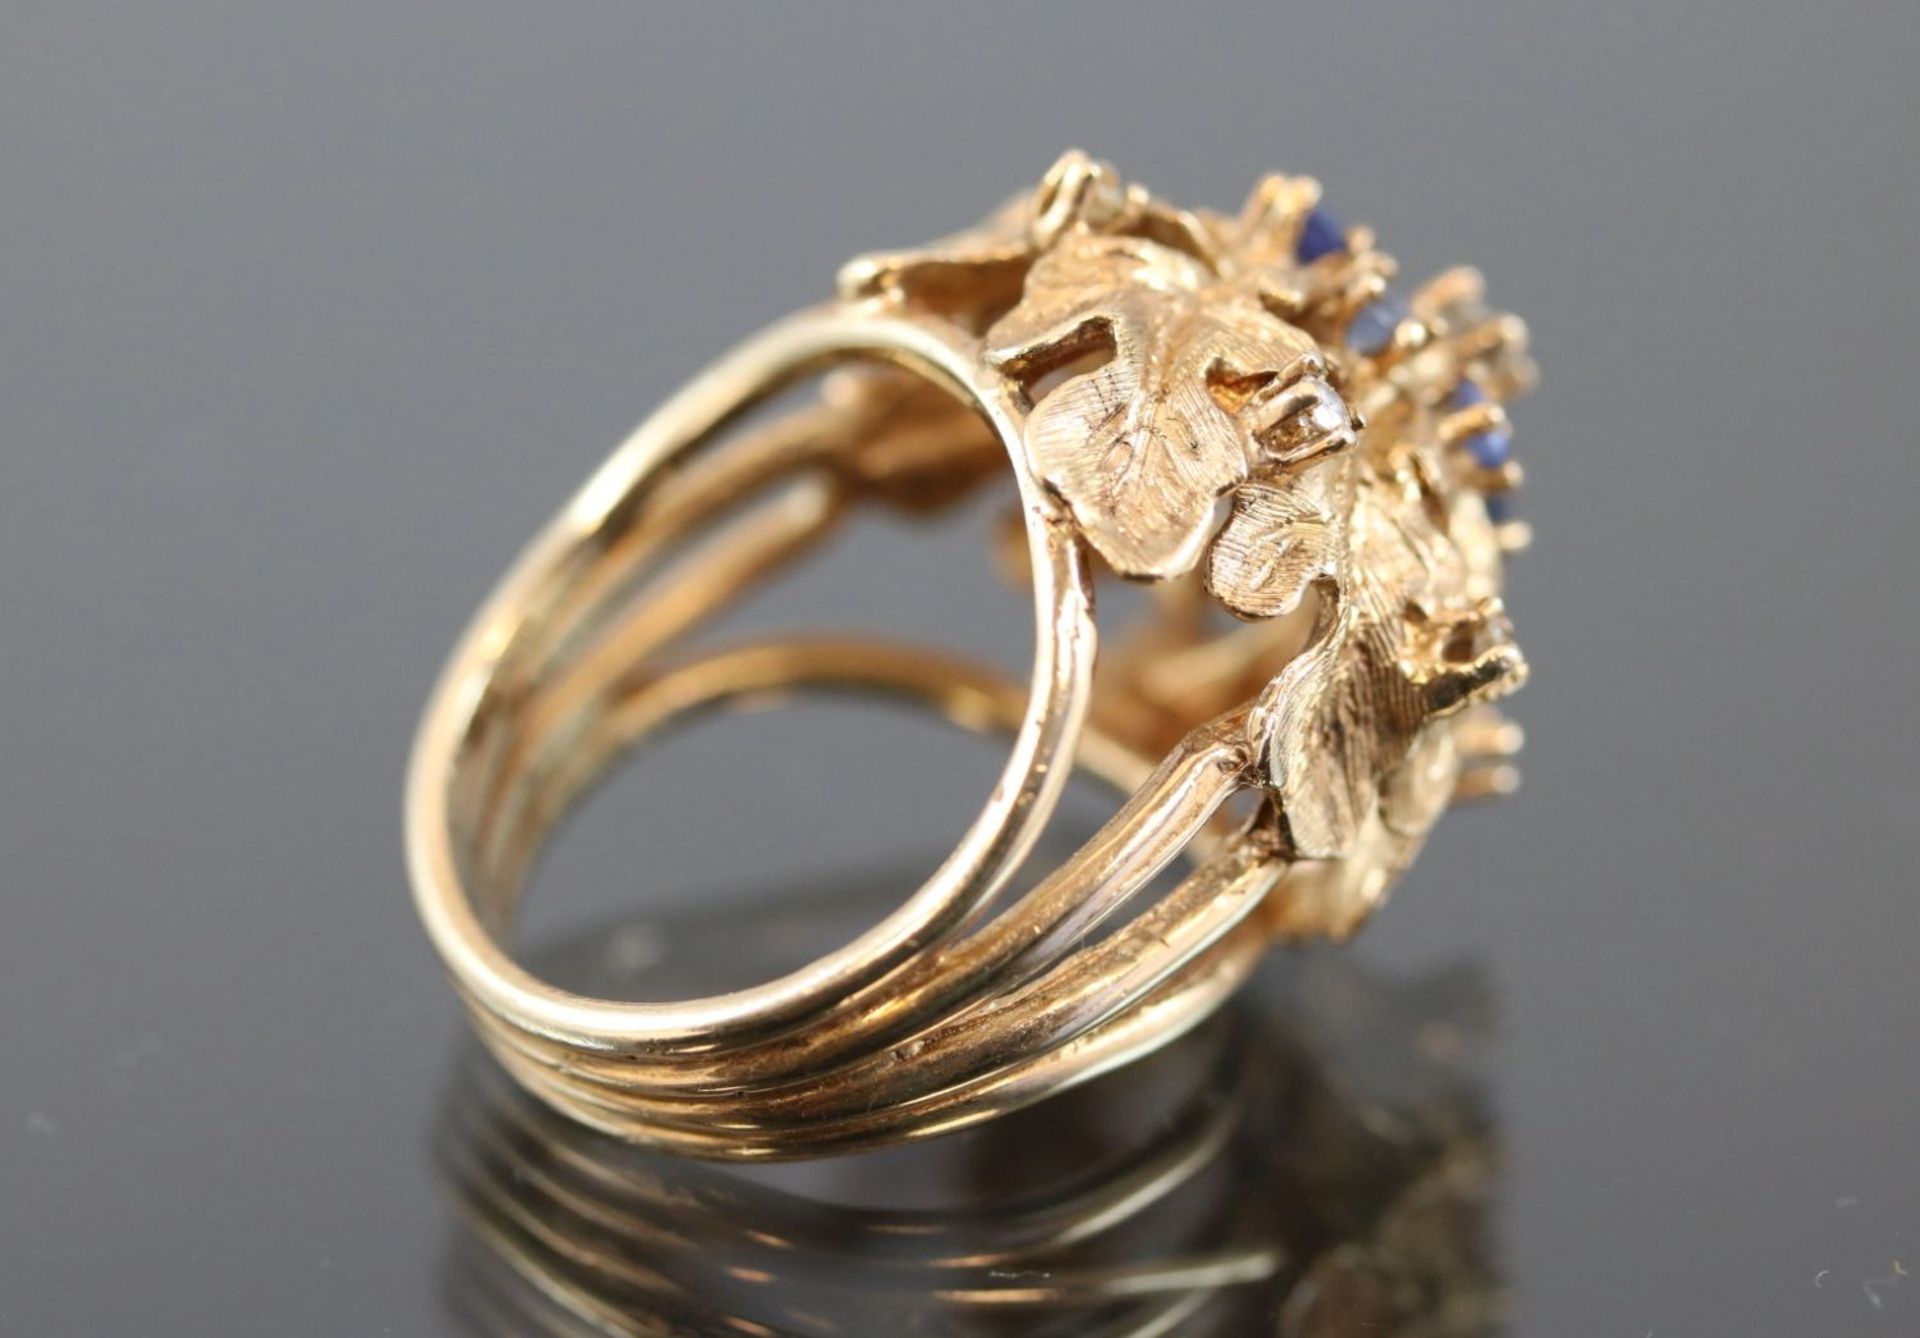 Saphir-Diamant-Ring, 585 Gelbgold10,9 Gramm 7 Diamanten, ca. 0,20 ct., w/si. Ringgröße: - Bild 4 aus 7